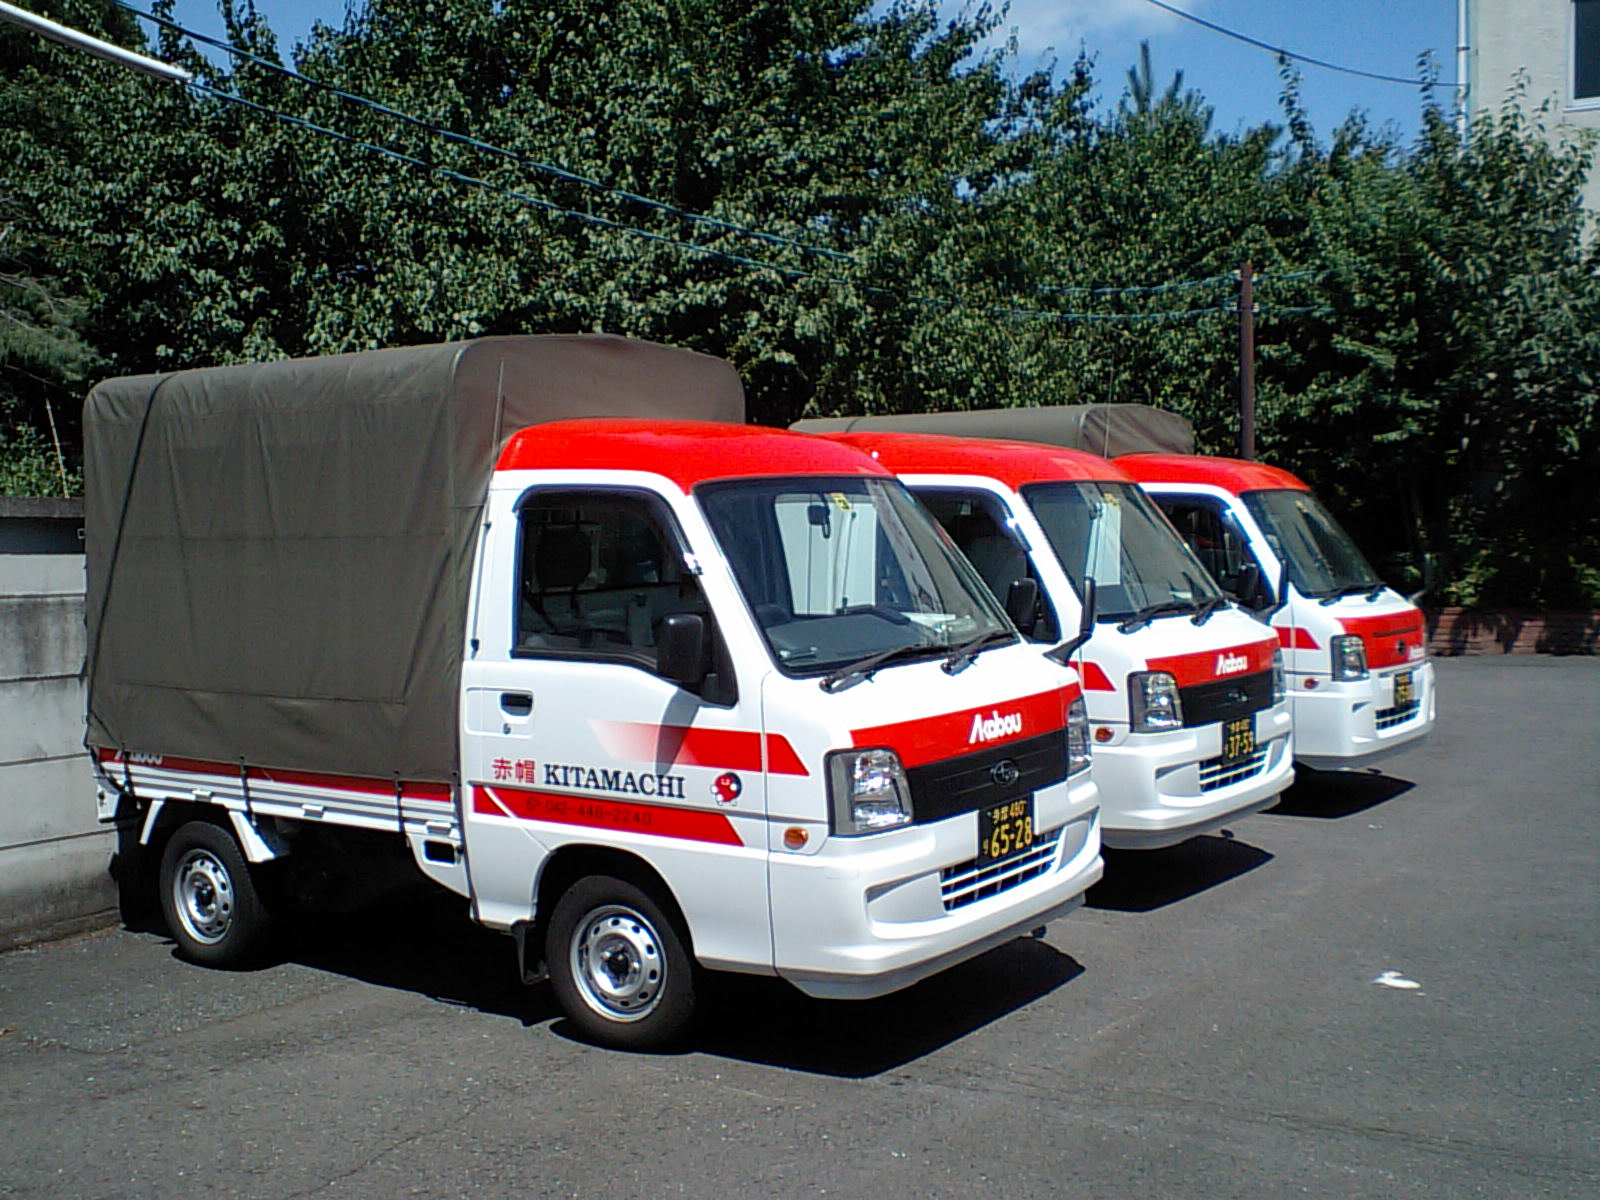 東京から伊豆への運送・配送で節約をお約束する赤帽北町運送です